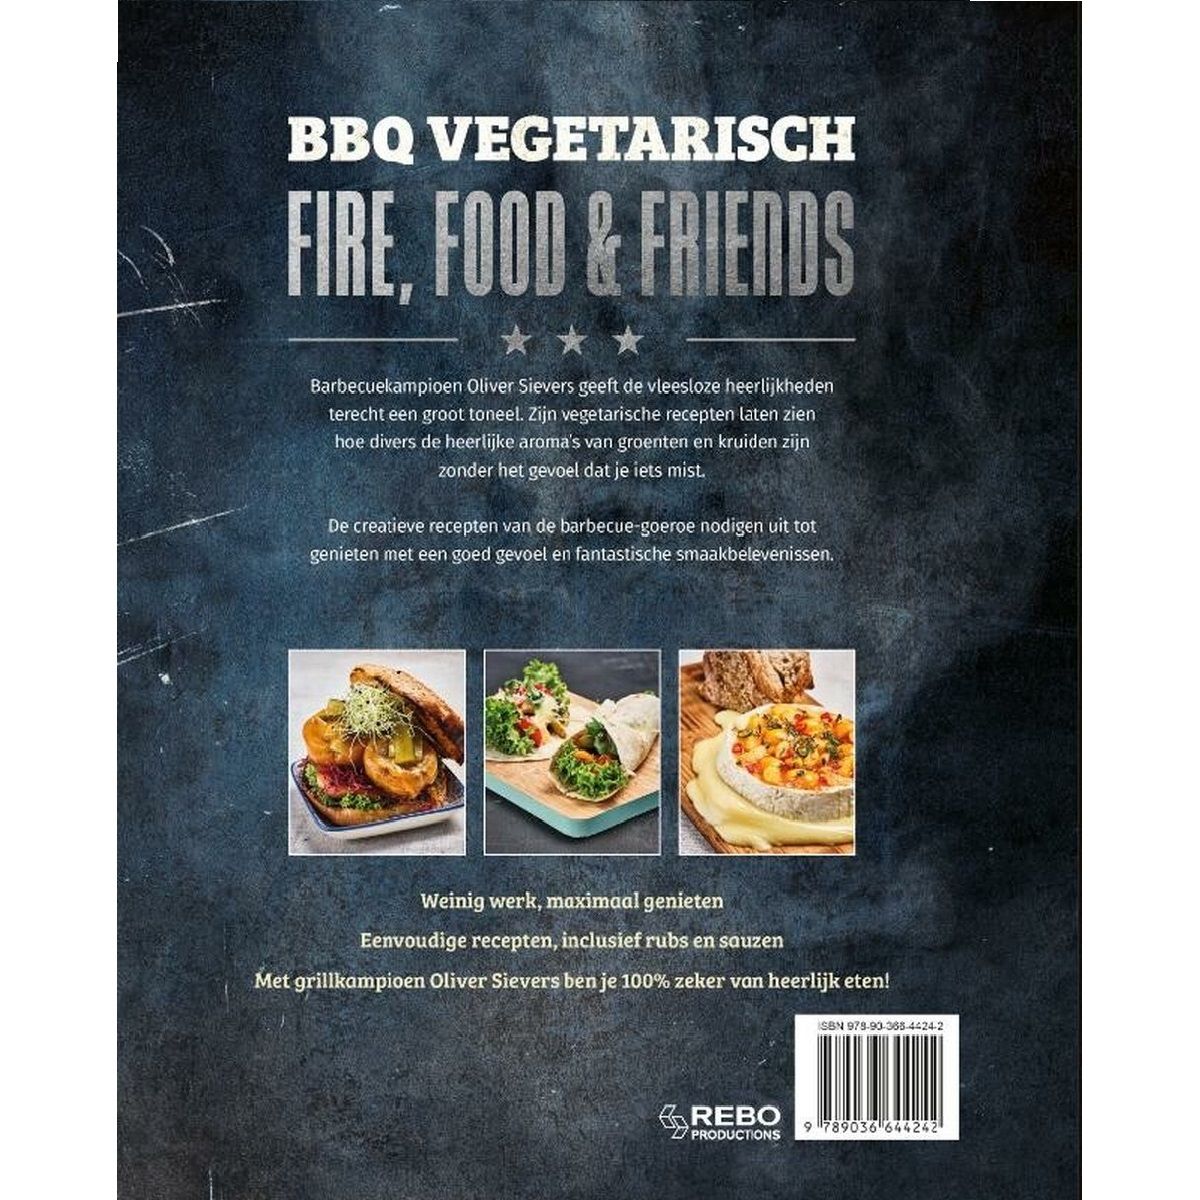 BBQ Vegetarisch Fire,food&friends